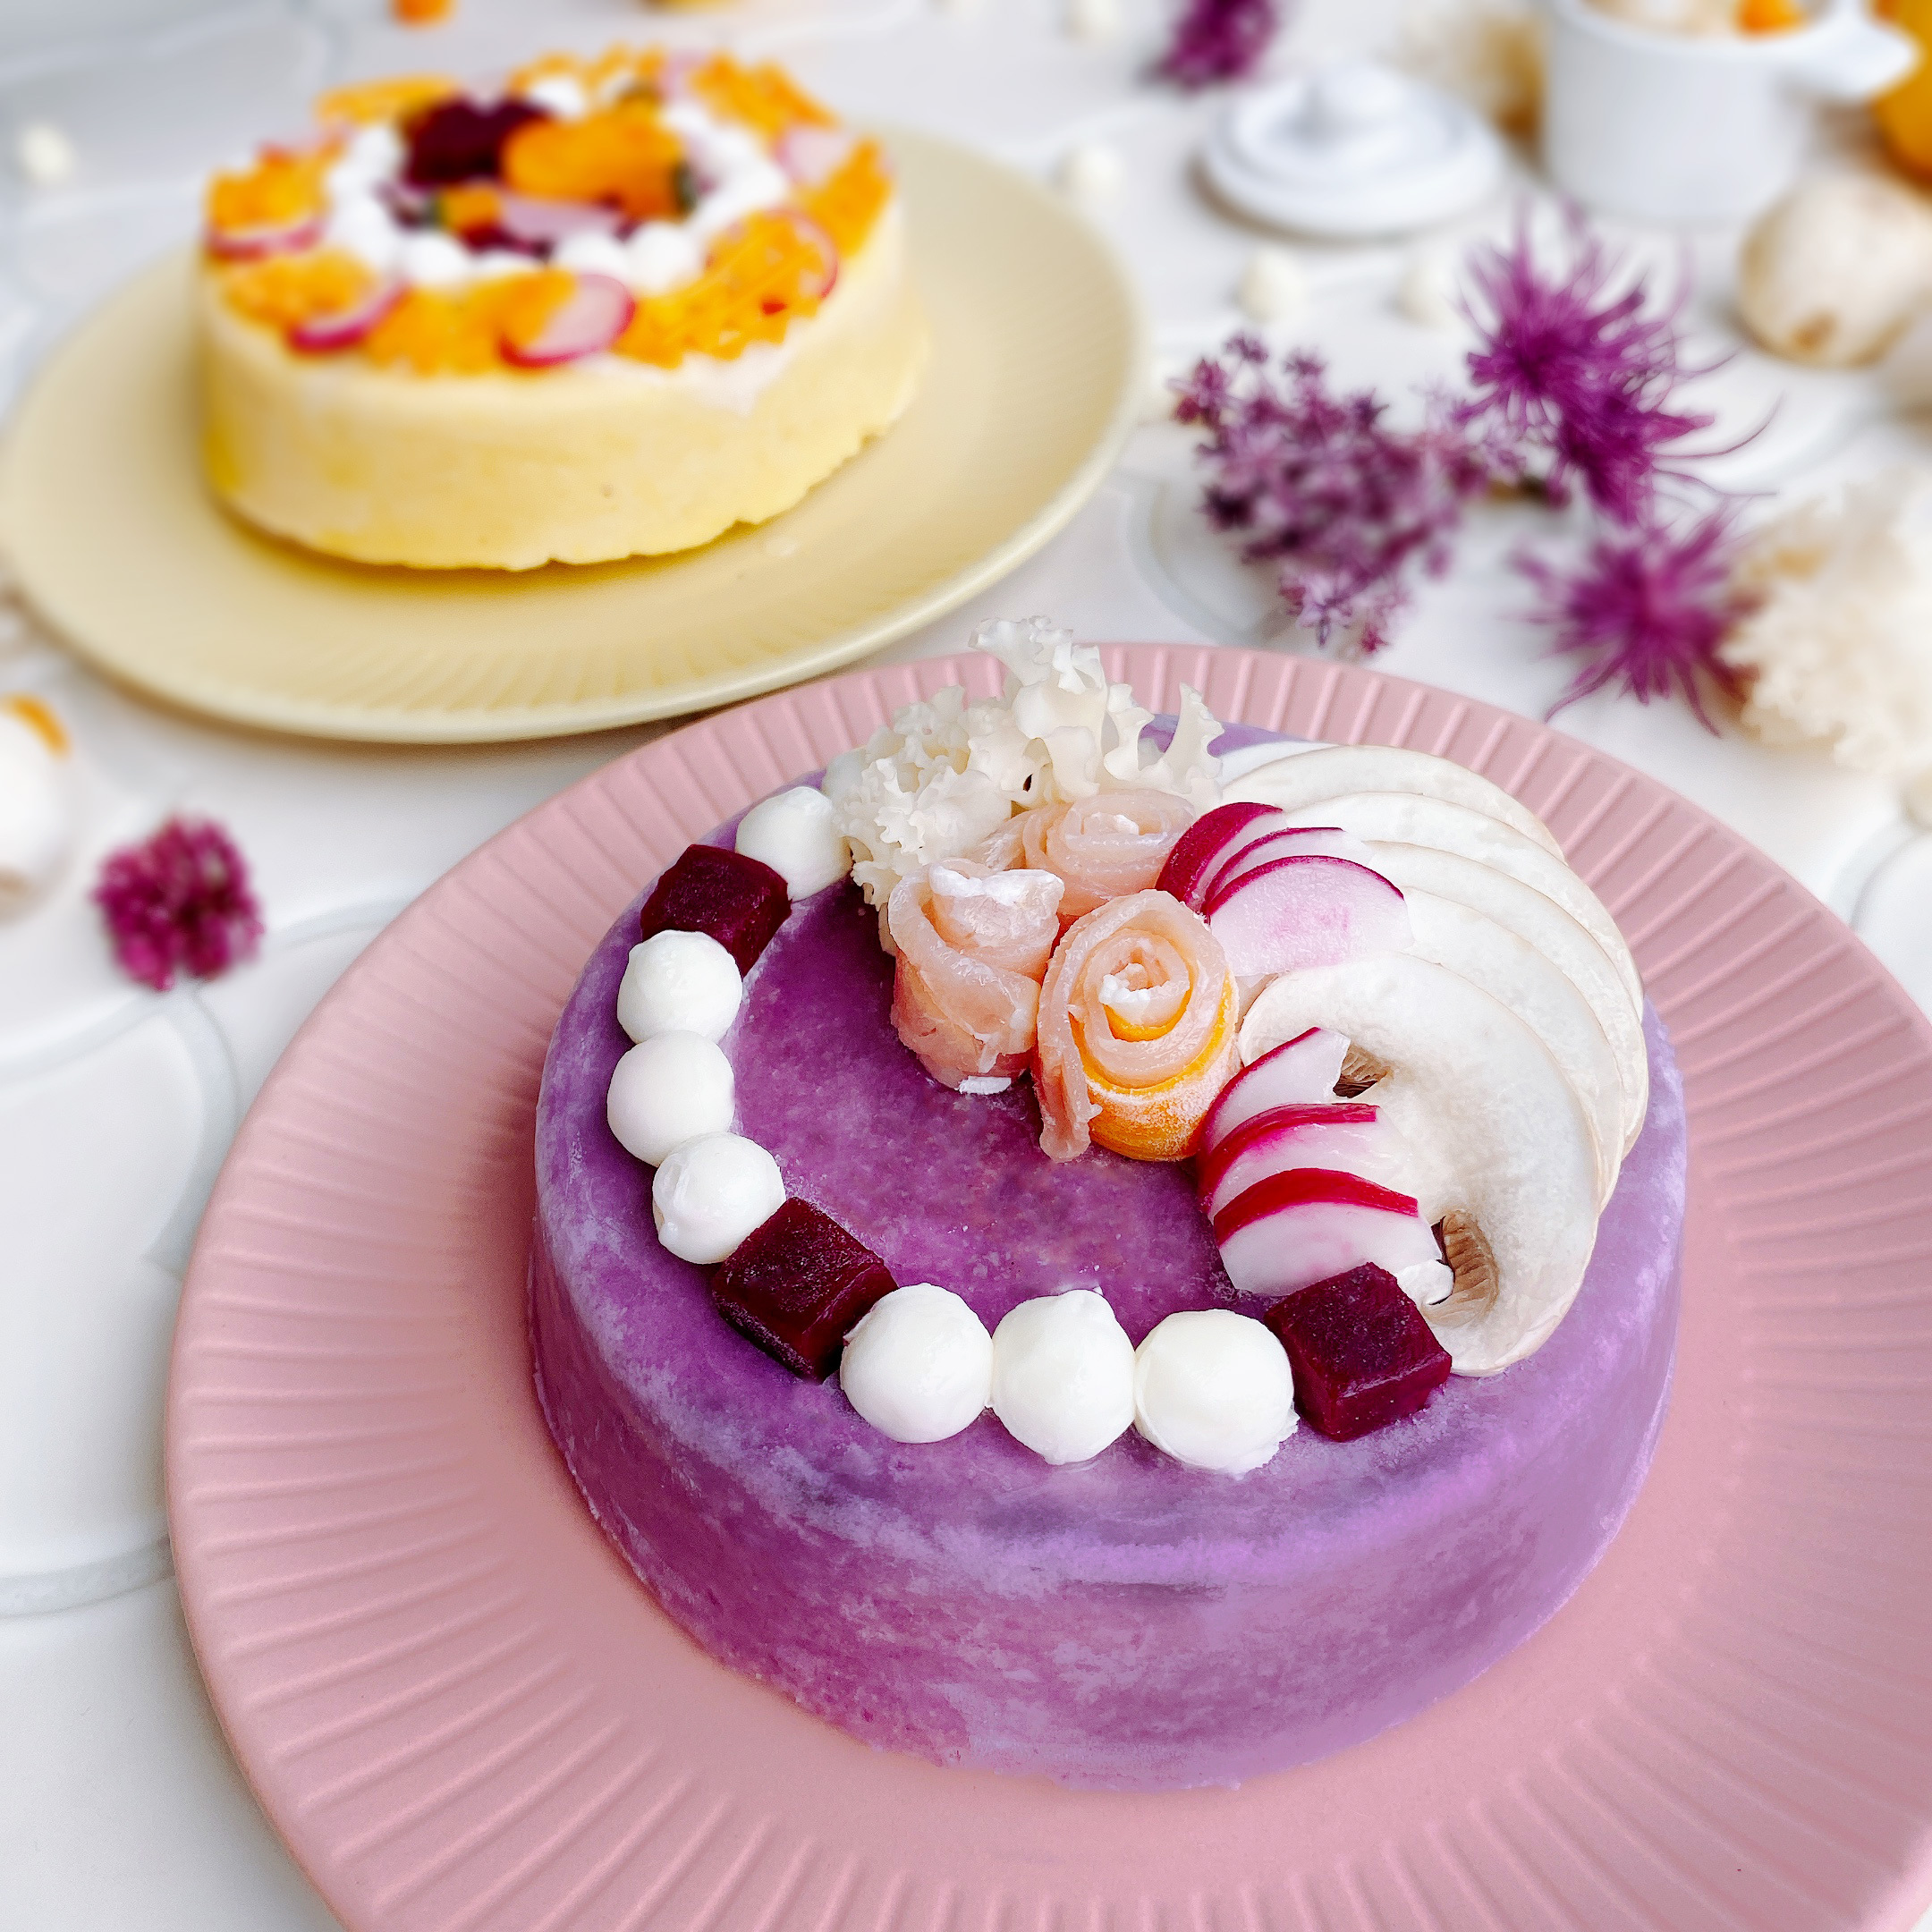 見た目はケーキ 中身は冷凍パスタ ハロウィンにピッタリな紫色とオレンジ色のまるでケーキ なインスタ映えパスタ Decopa 秋の限定商品 新発売 株式会社プレックスのプレスリリース